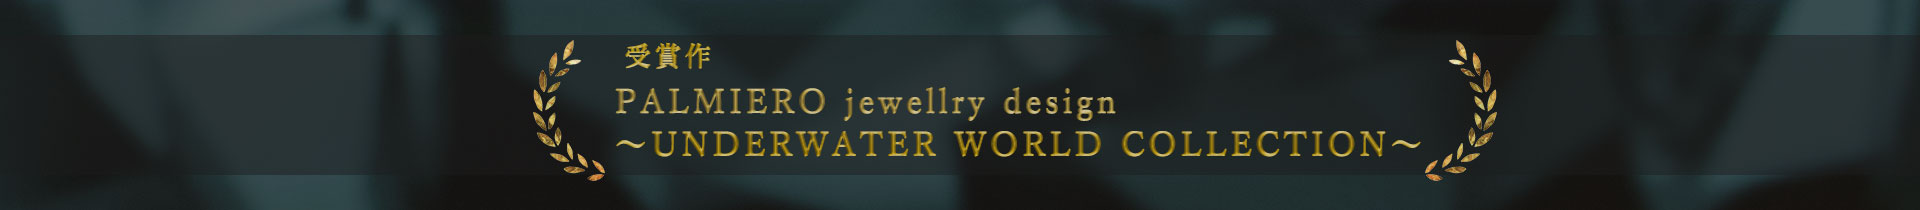  受賞作 PALMIERO jewellry design 〜UNDERWARTER WORLD COLLECTION〜